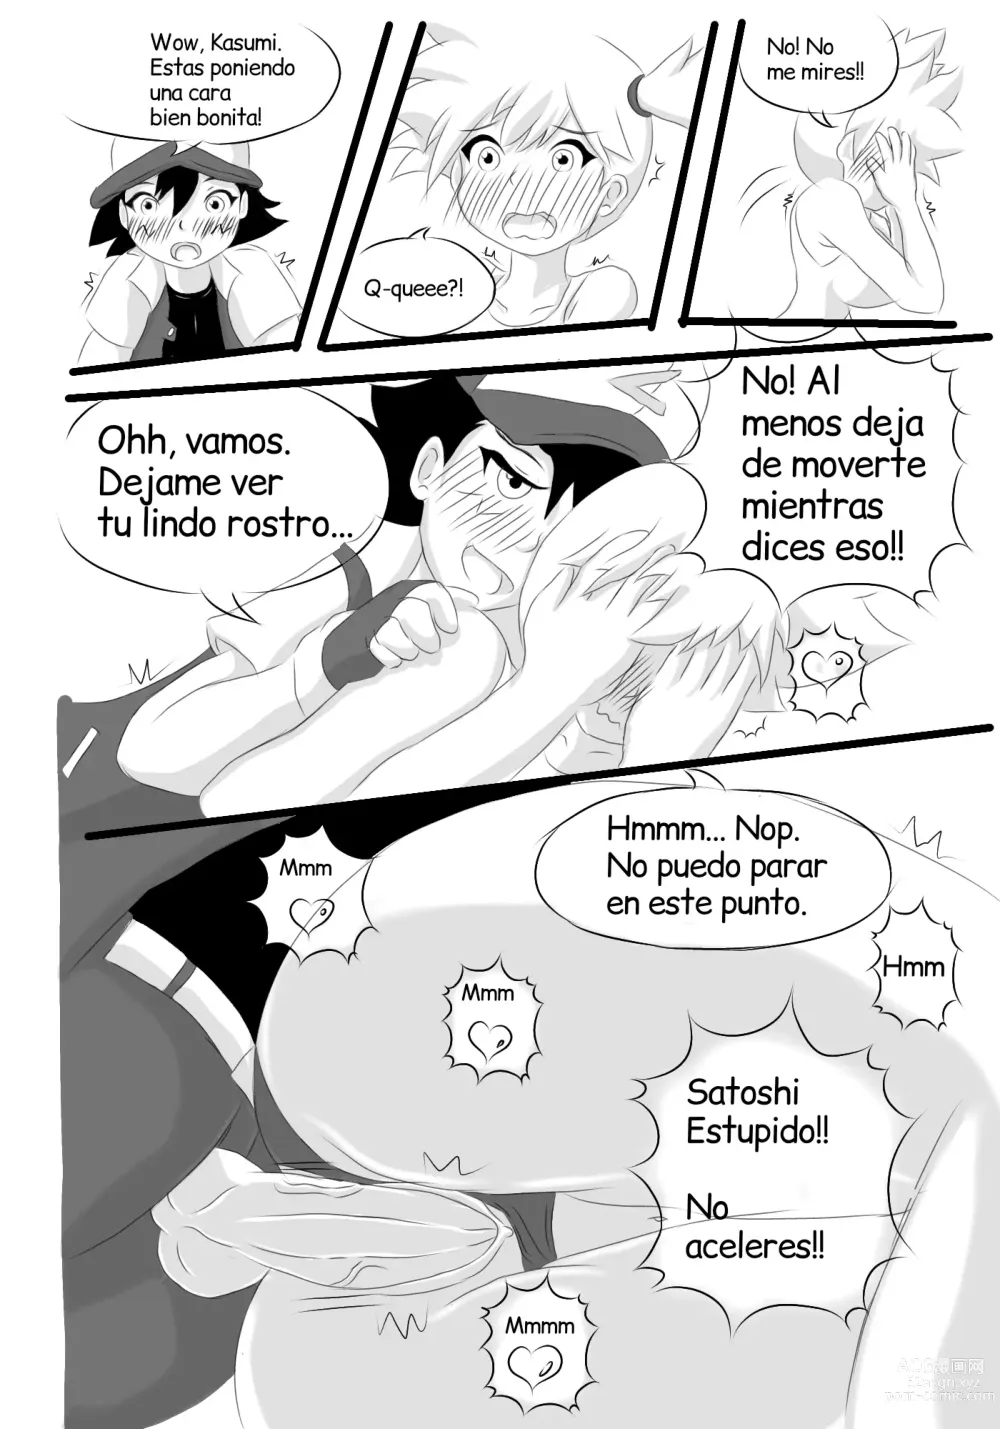 Page 8 of doujinshi Kasumi and Satoshi